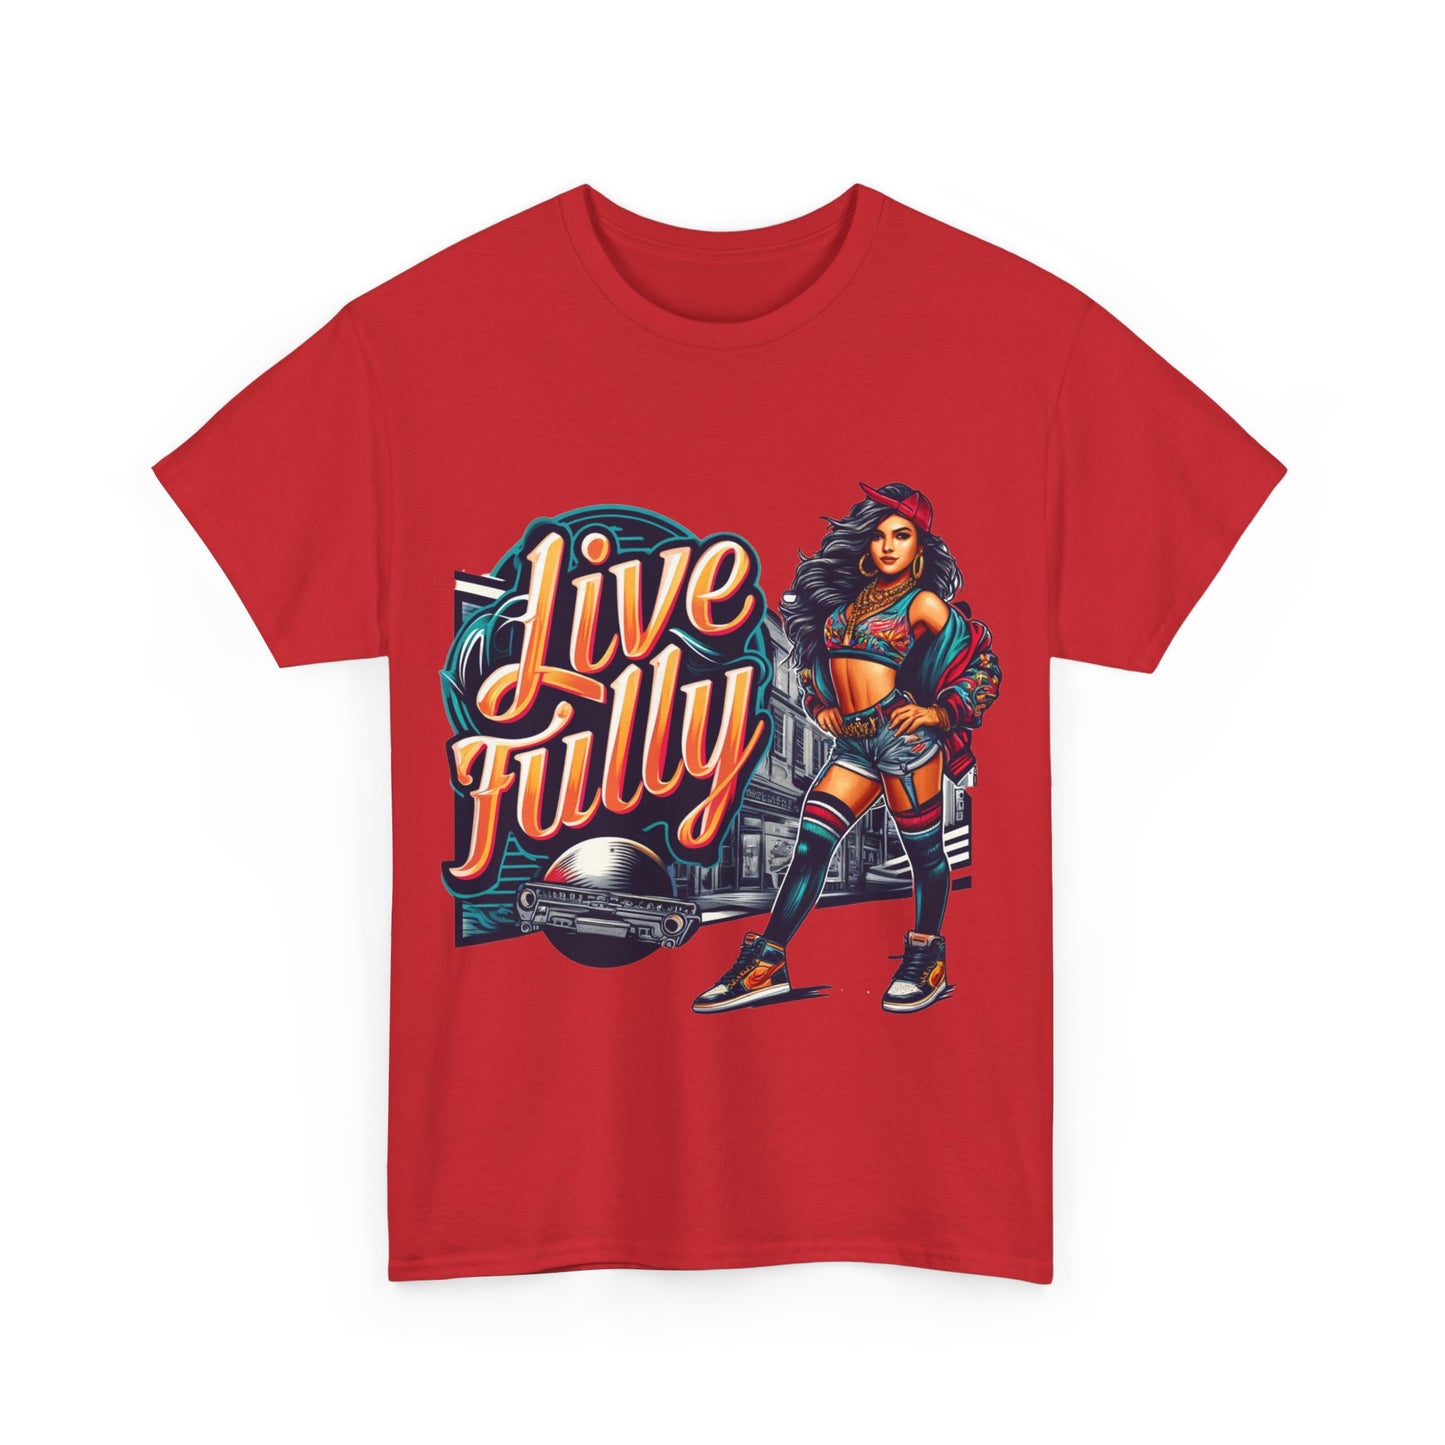 Y.M.L.Y. "Live Fully" T-Shirt Motivational Wear Urban Wear Street Wear Street Art Classic Tee Unisex